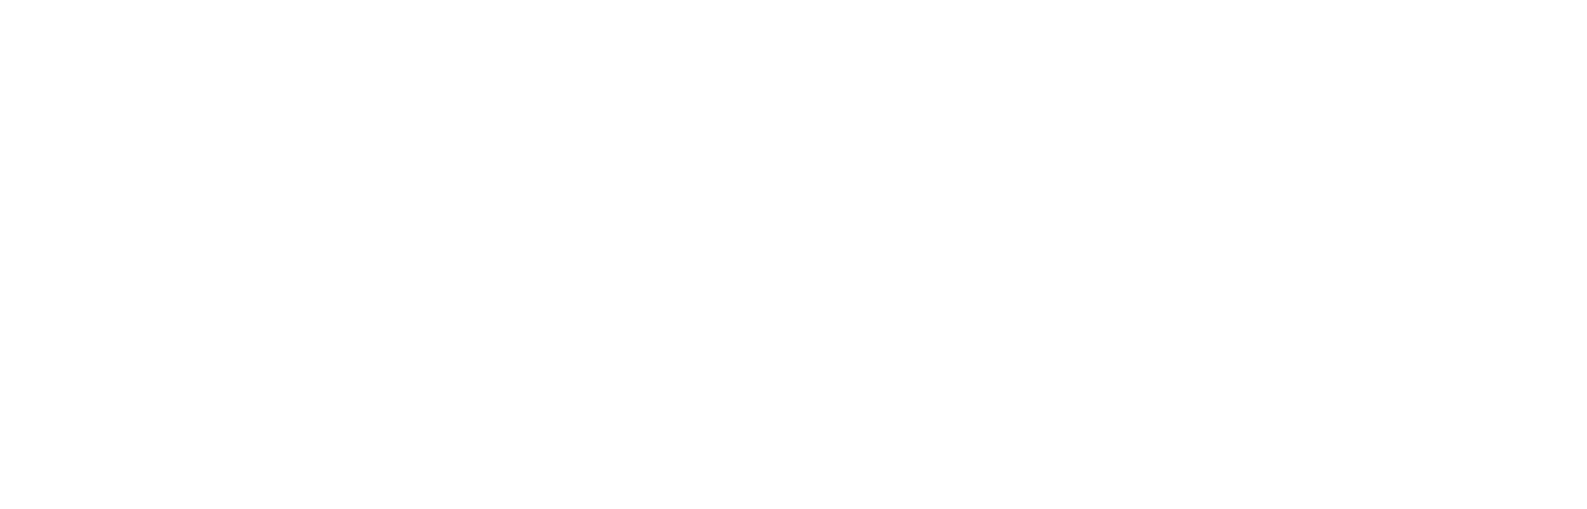 101 FBD logo wide light